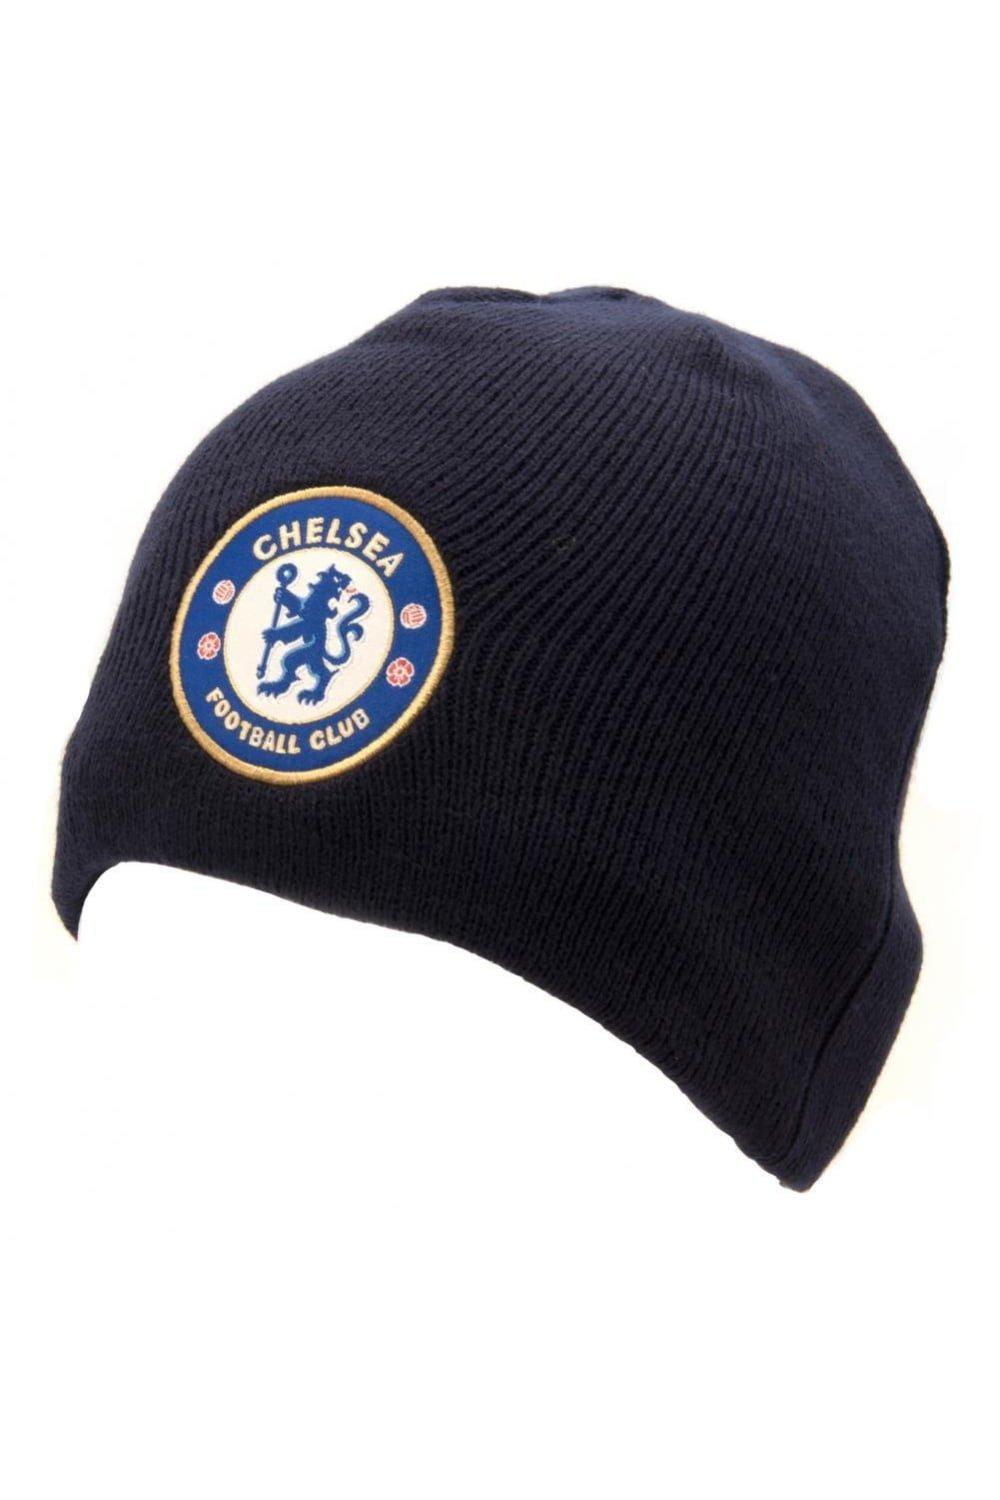 Официальная вязаная шапка Chelsea FC, темно-синий шапка гриффиндор с гербом универсальный детский размер